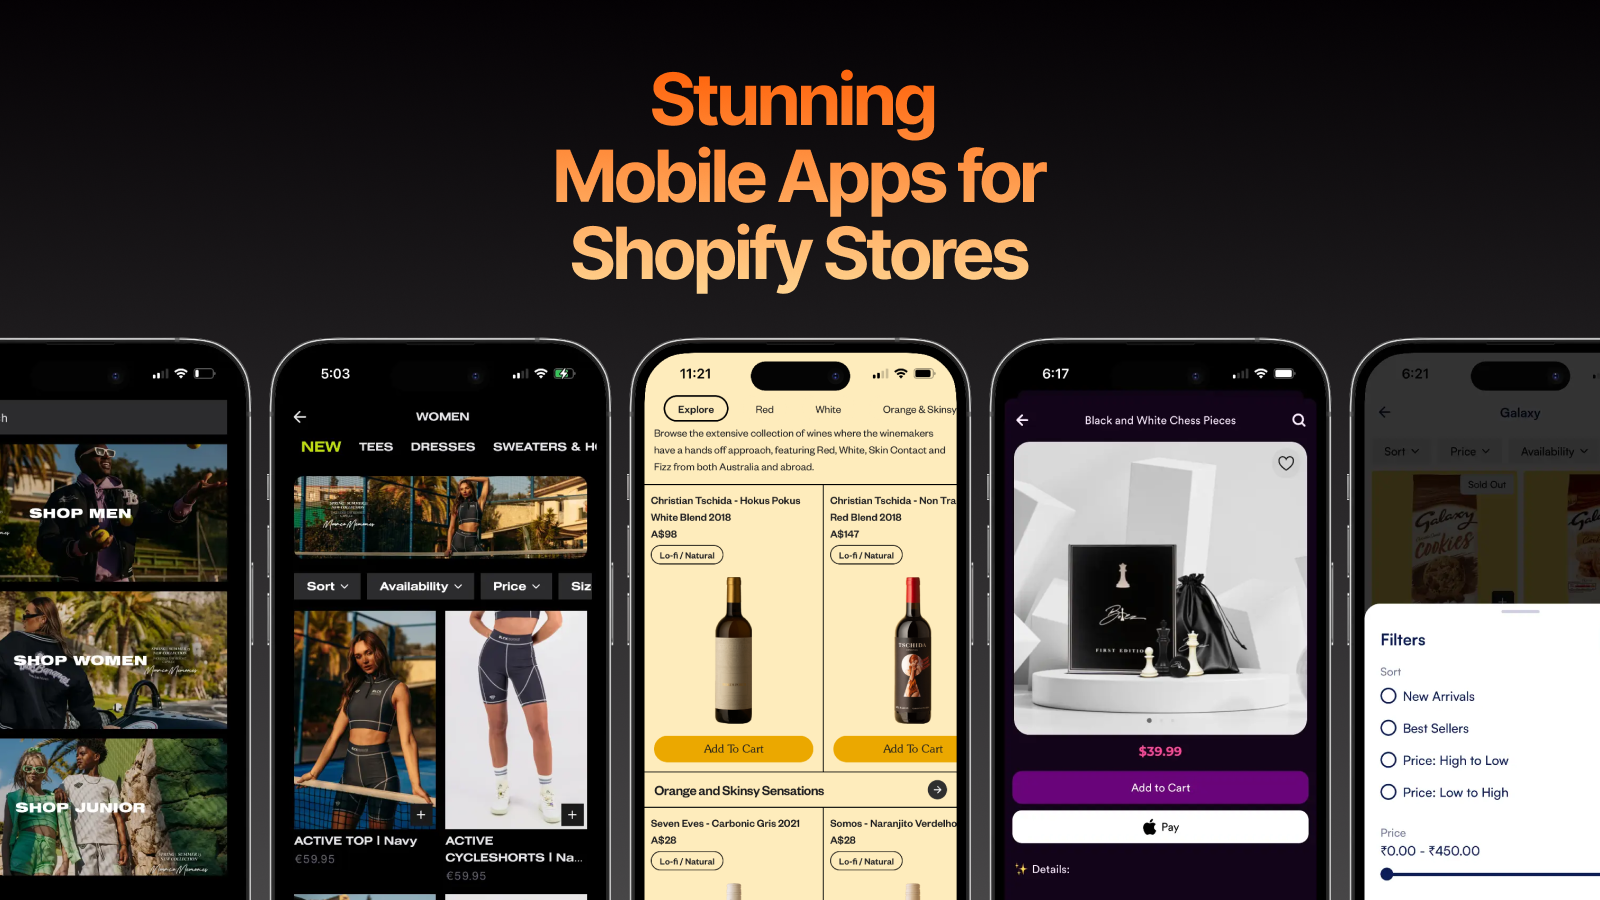 ¡Convierte tu tienda en una aplicación móvil con Fuego!